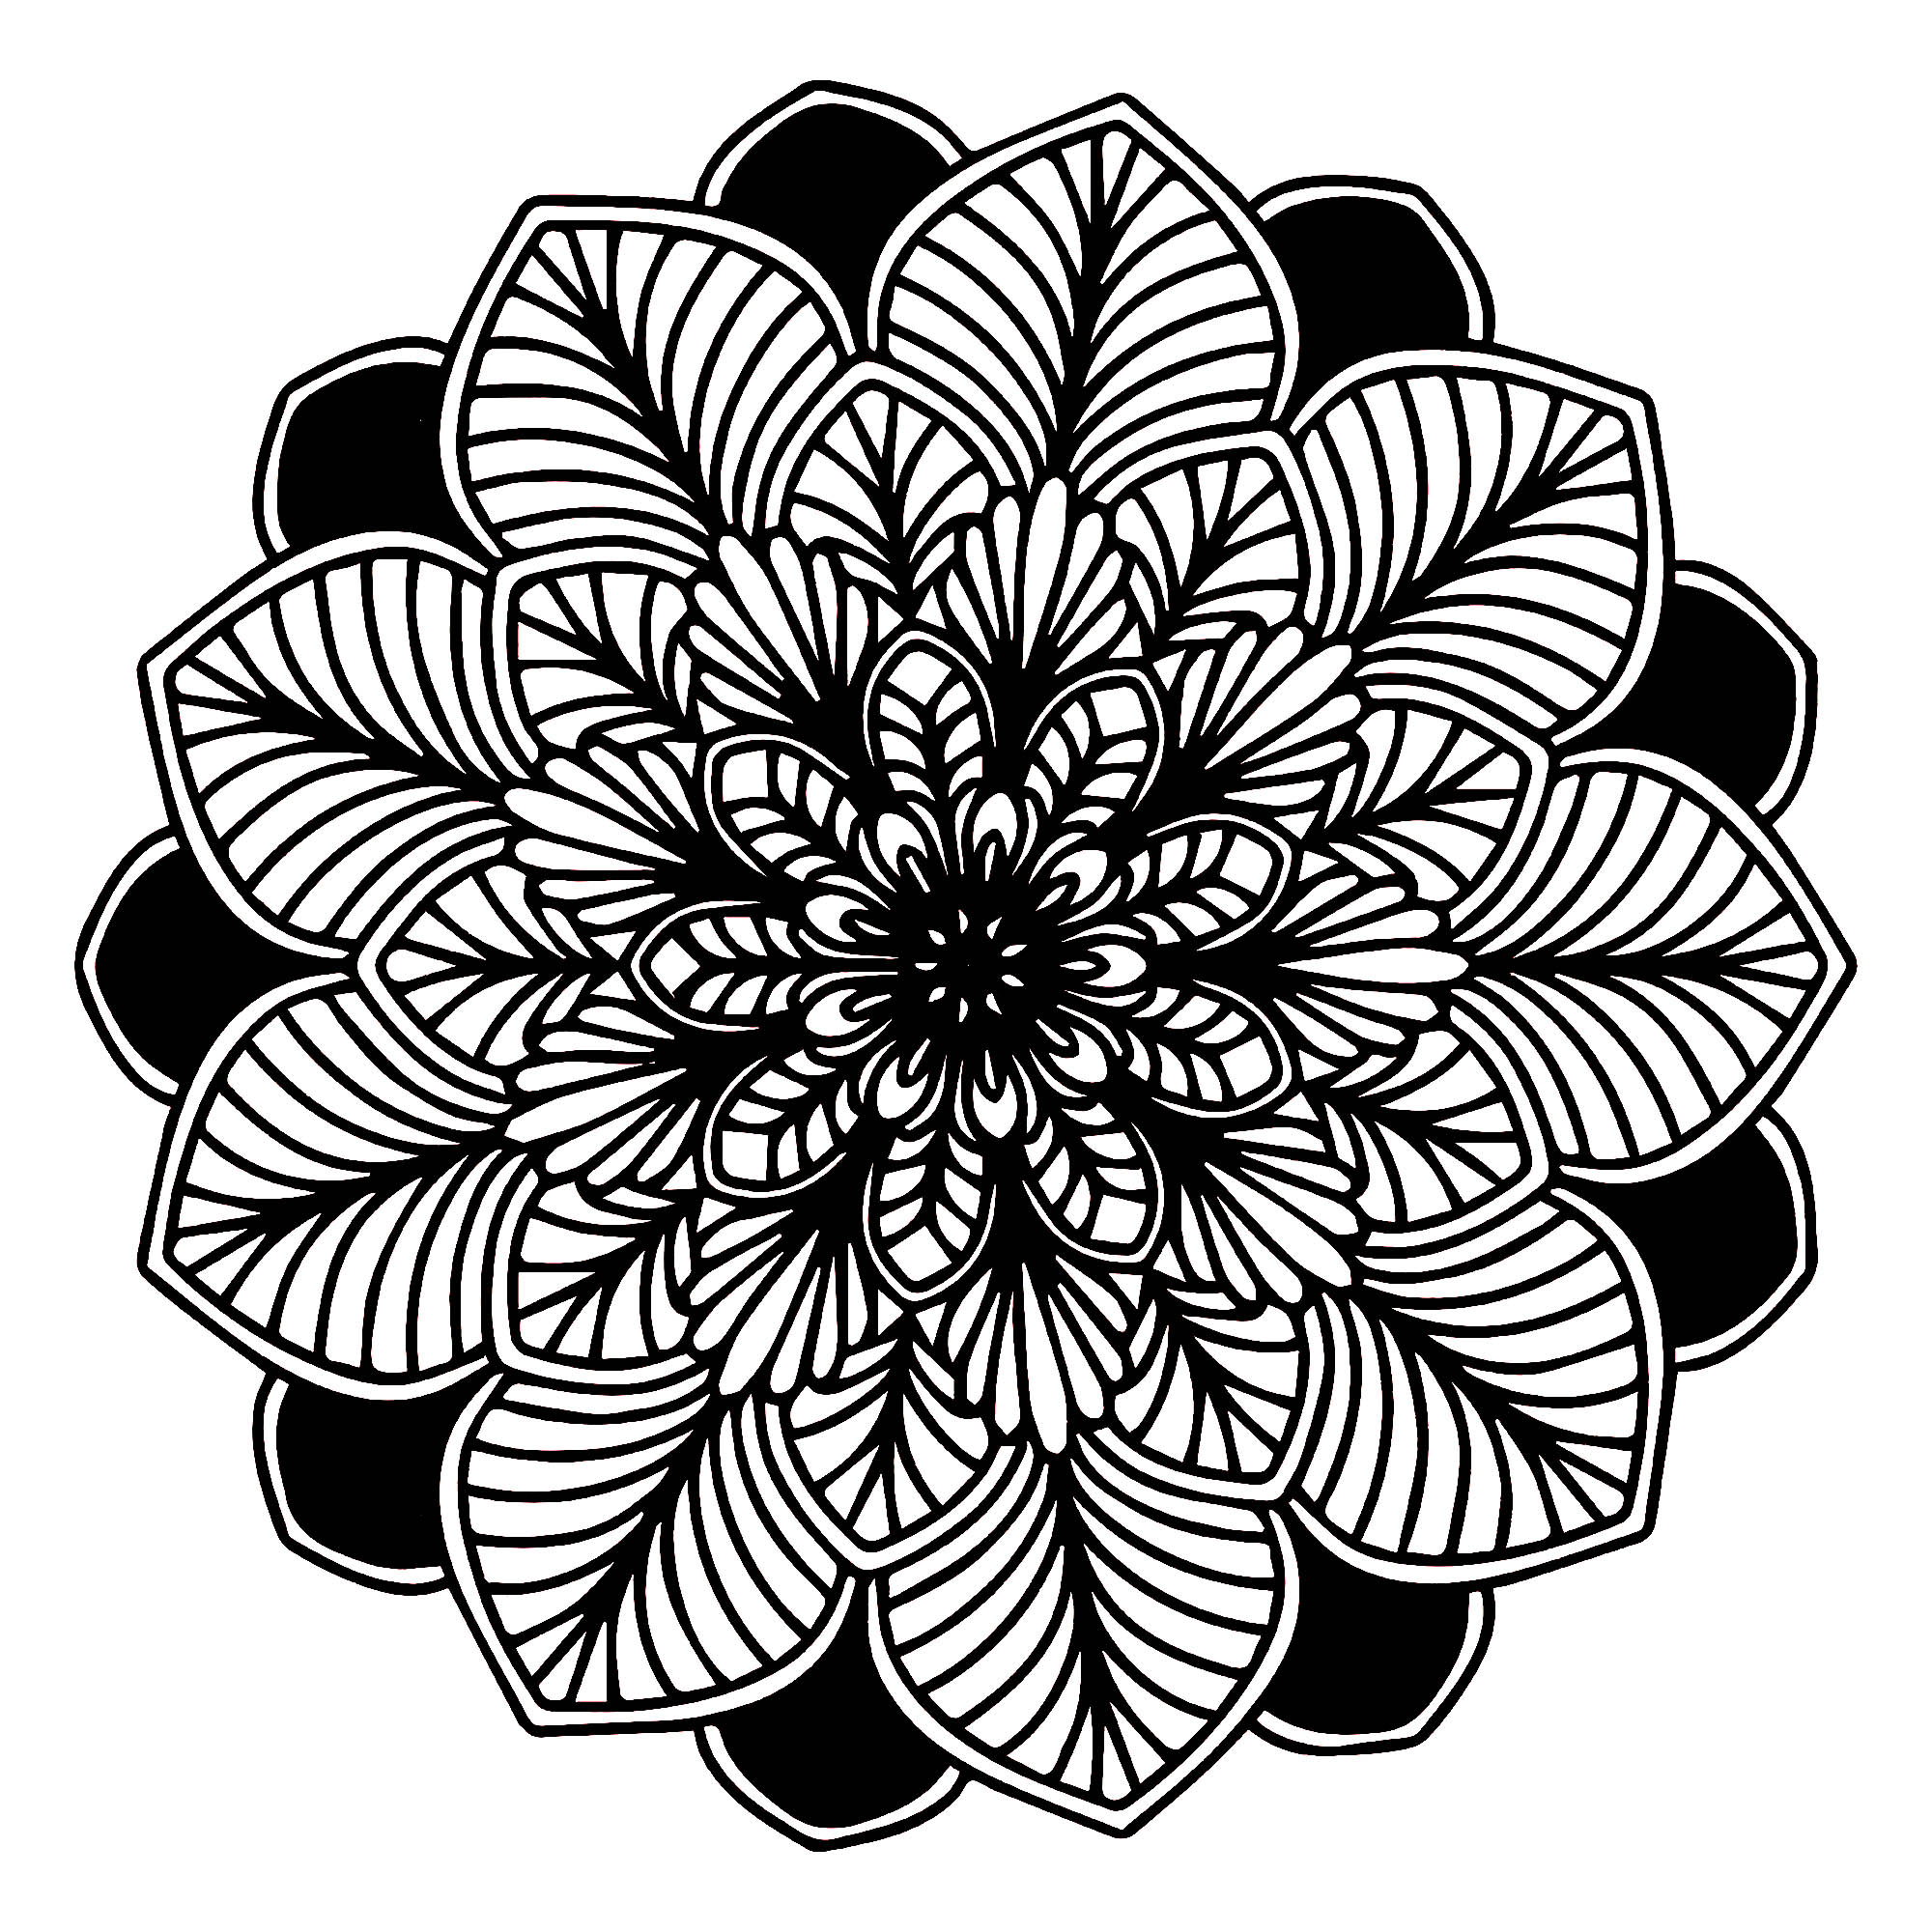 Wenn die Pflanzenwelt sich perfekt in ein Mandala einfügt, sieht das so aus, ist das nicht wunderschön? Es besteht aus Blättern: einige auf schwarzem Hintergrund und andere sehr realistisch und mit dicken Linien.